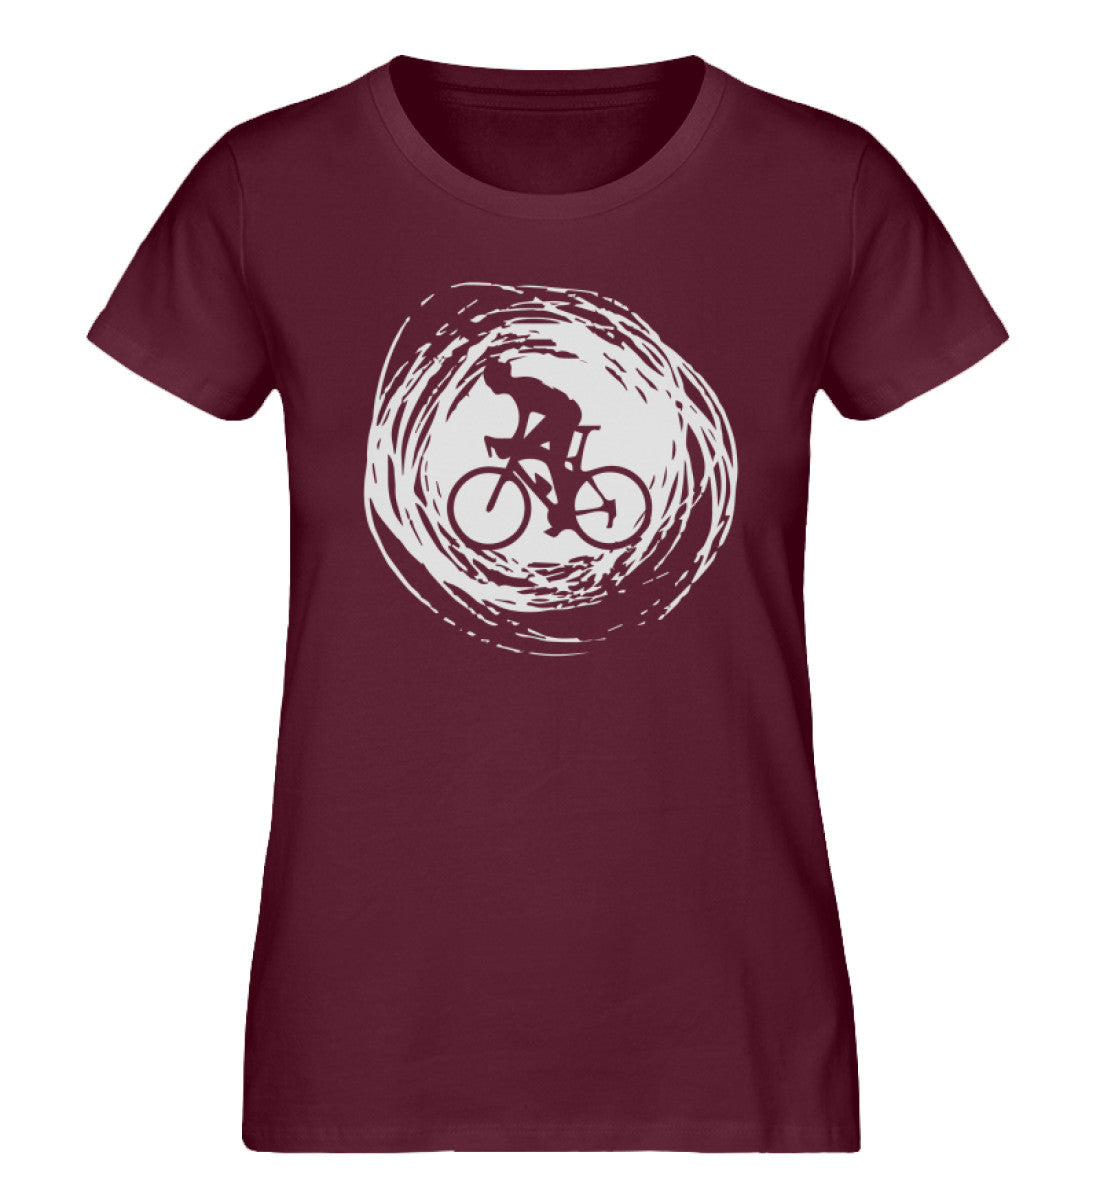 Radfahren Kreativ - Damen Organic T-Shirt fahrrad Weinrot